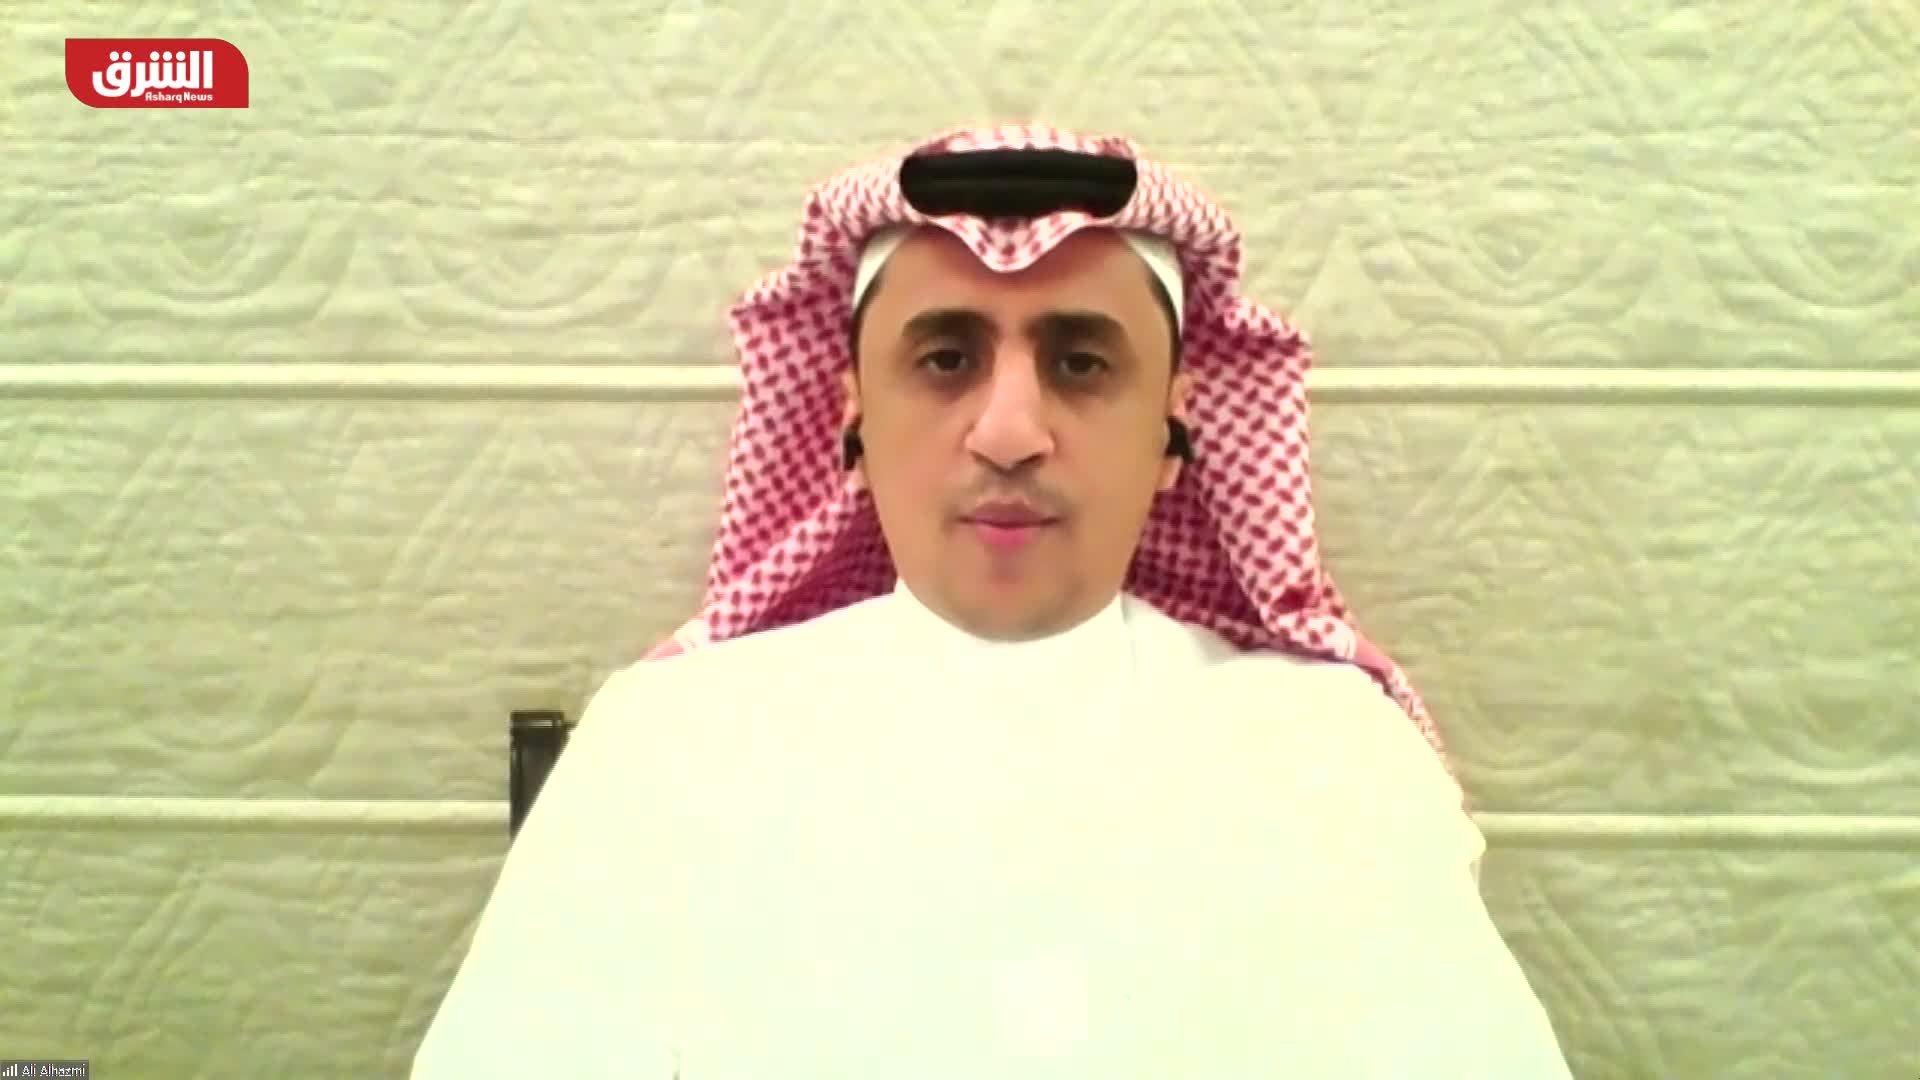 علي الحازمي: السعودية تقود المبادرات والتوجه العالمي للطاقة المتجددة